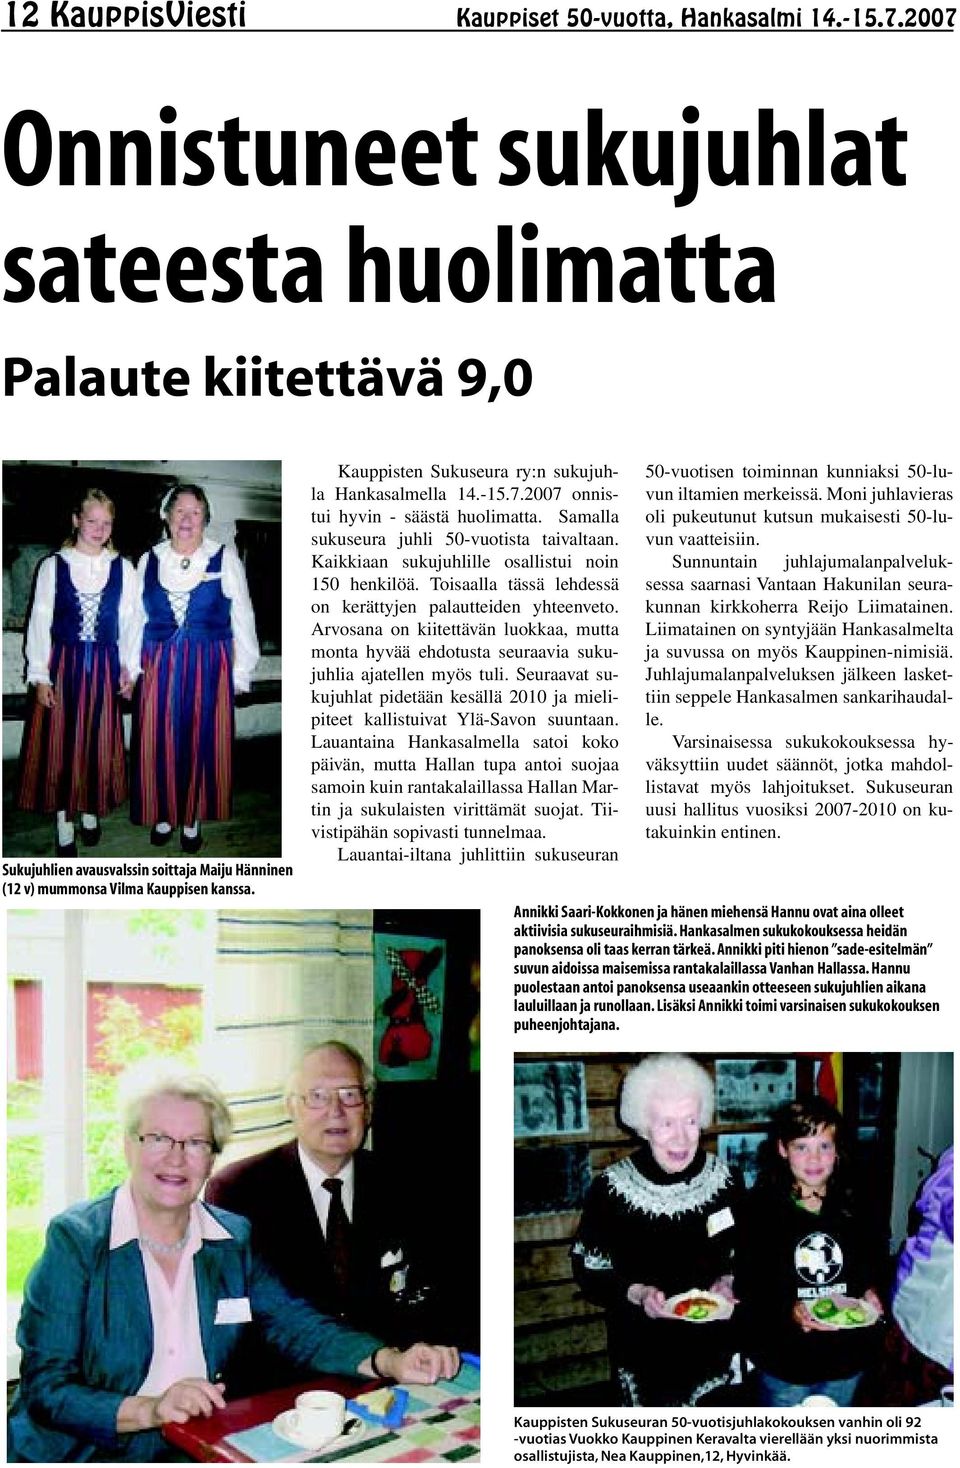 Kauppisten Sukuseura ry:n sukujuhla Hankasalmella 14.-15.7.2007 onnistui hyvin - säästä huolimatta. Samalla sukuseura juhli 50-vuotista taivaltaan. Kaikkiaan sukujuhlille osallistui noin 150 henkilöä.